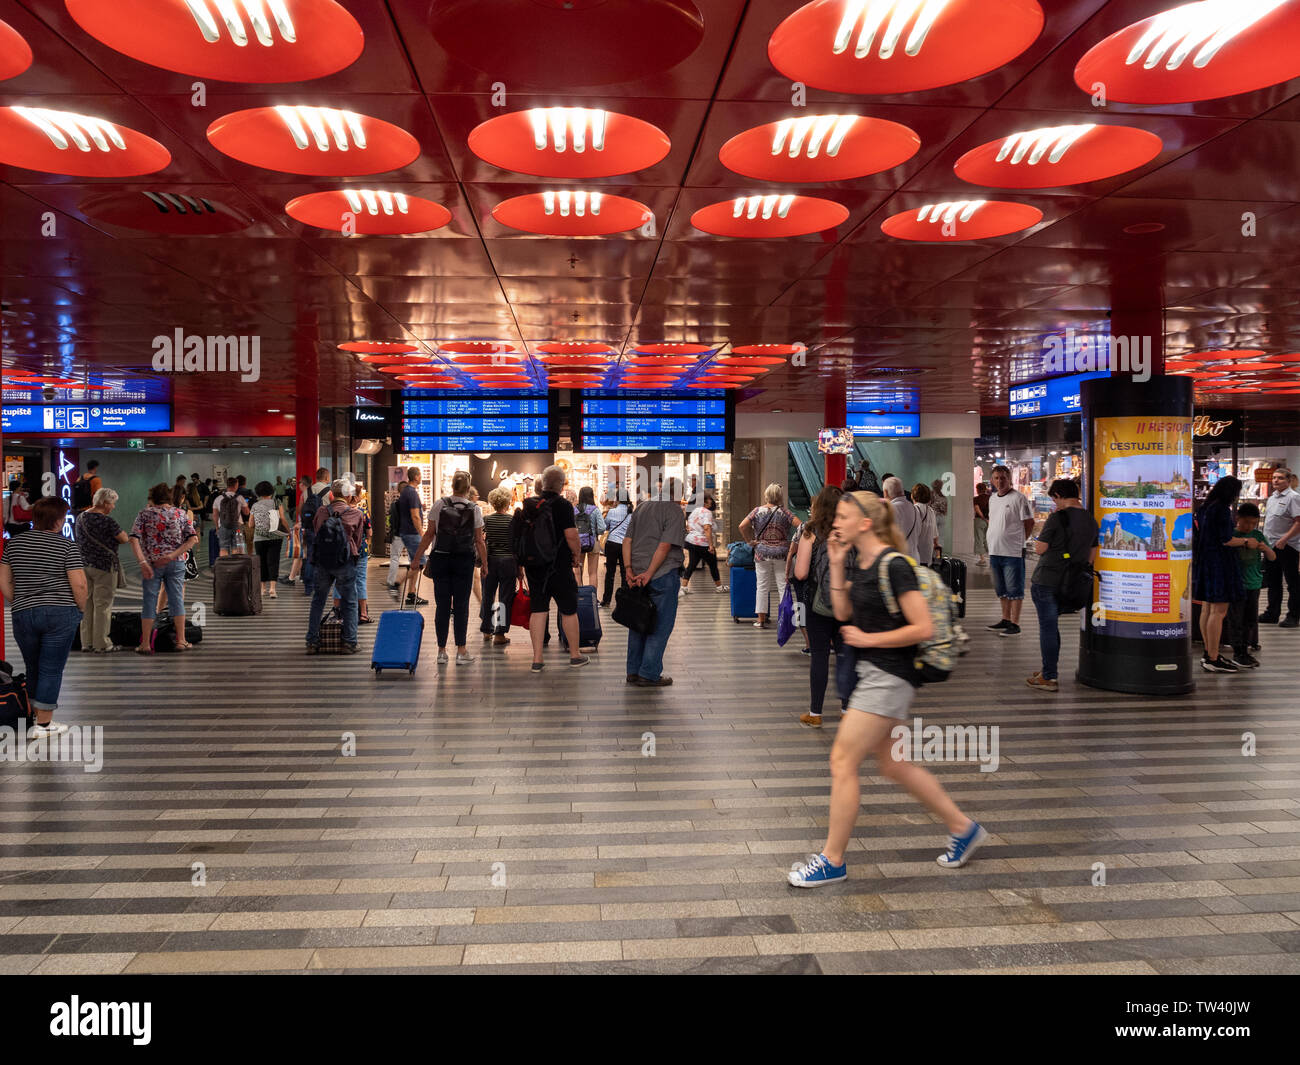 Praga, Repubblica Ceca - 10 Giugno 2019: Praga Stazione Principale interno affollato di viaggiatori. Un trafficato terminal ferroviario edificio. Foto Stock